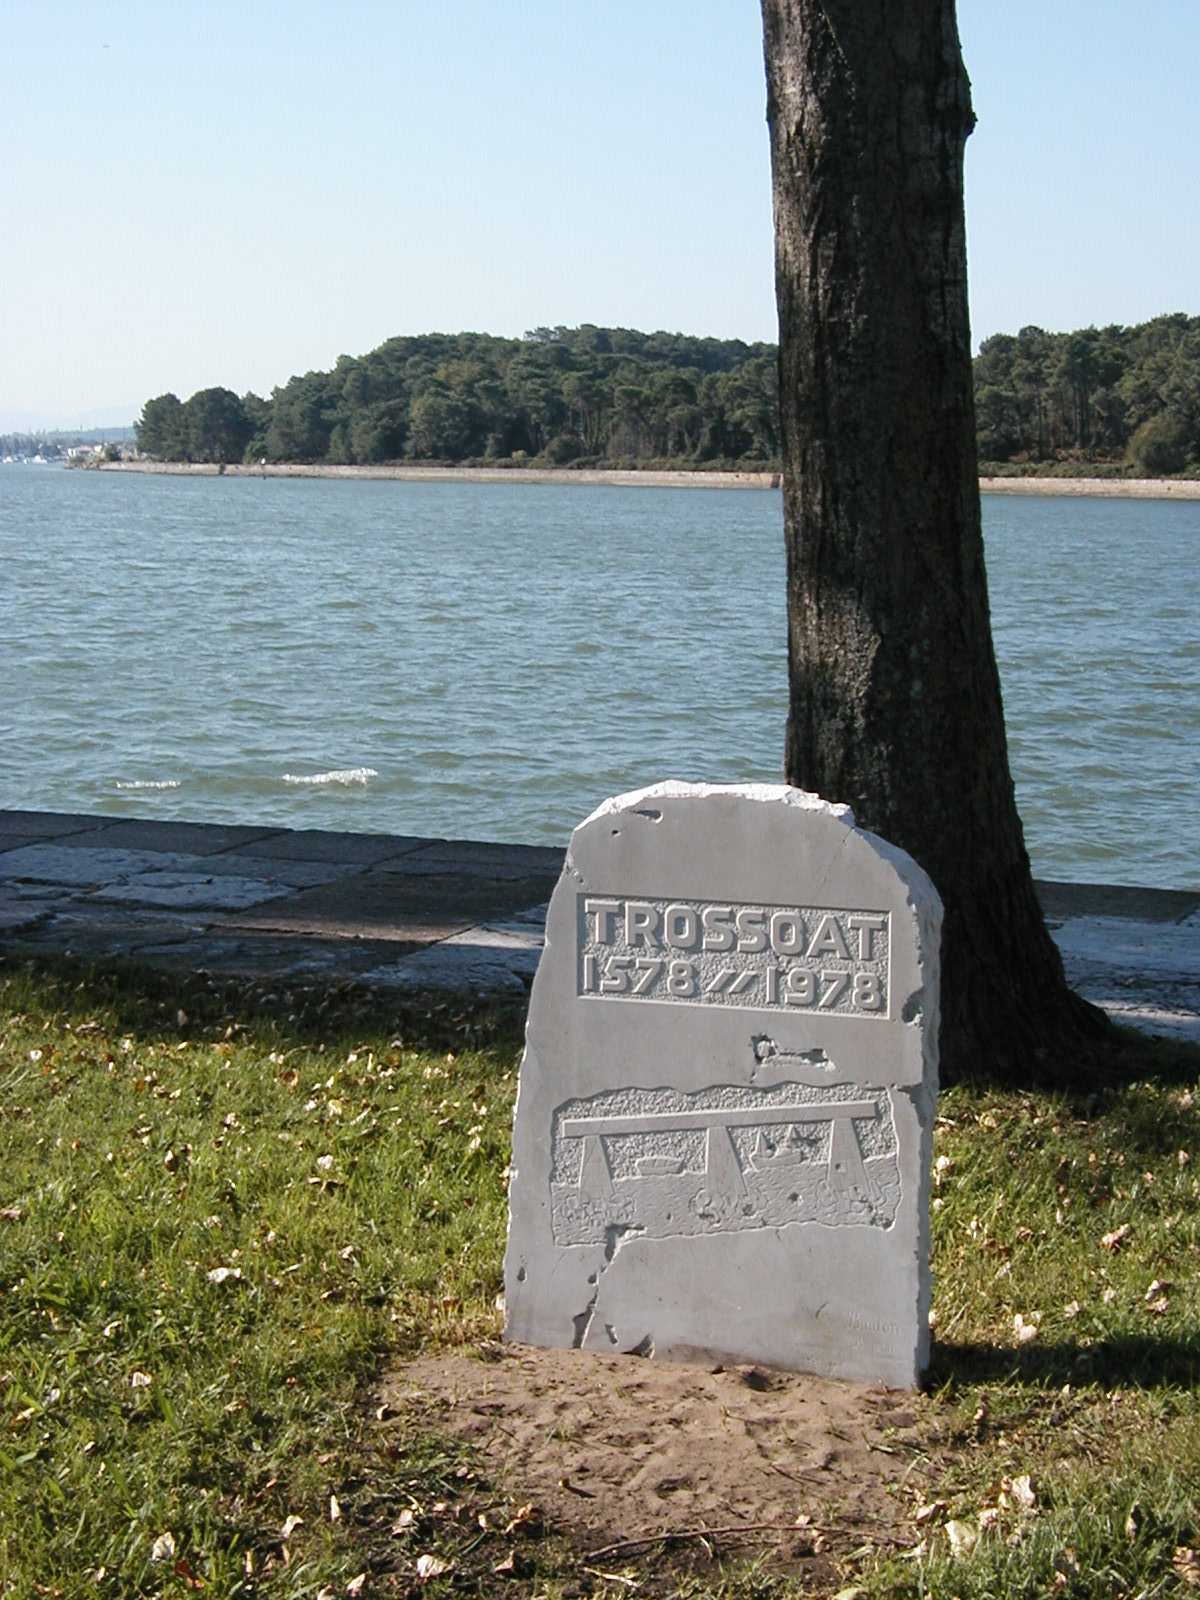 Stèle du Trossoat  (Commémoration du détournement)